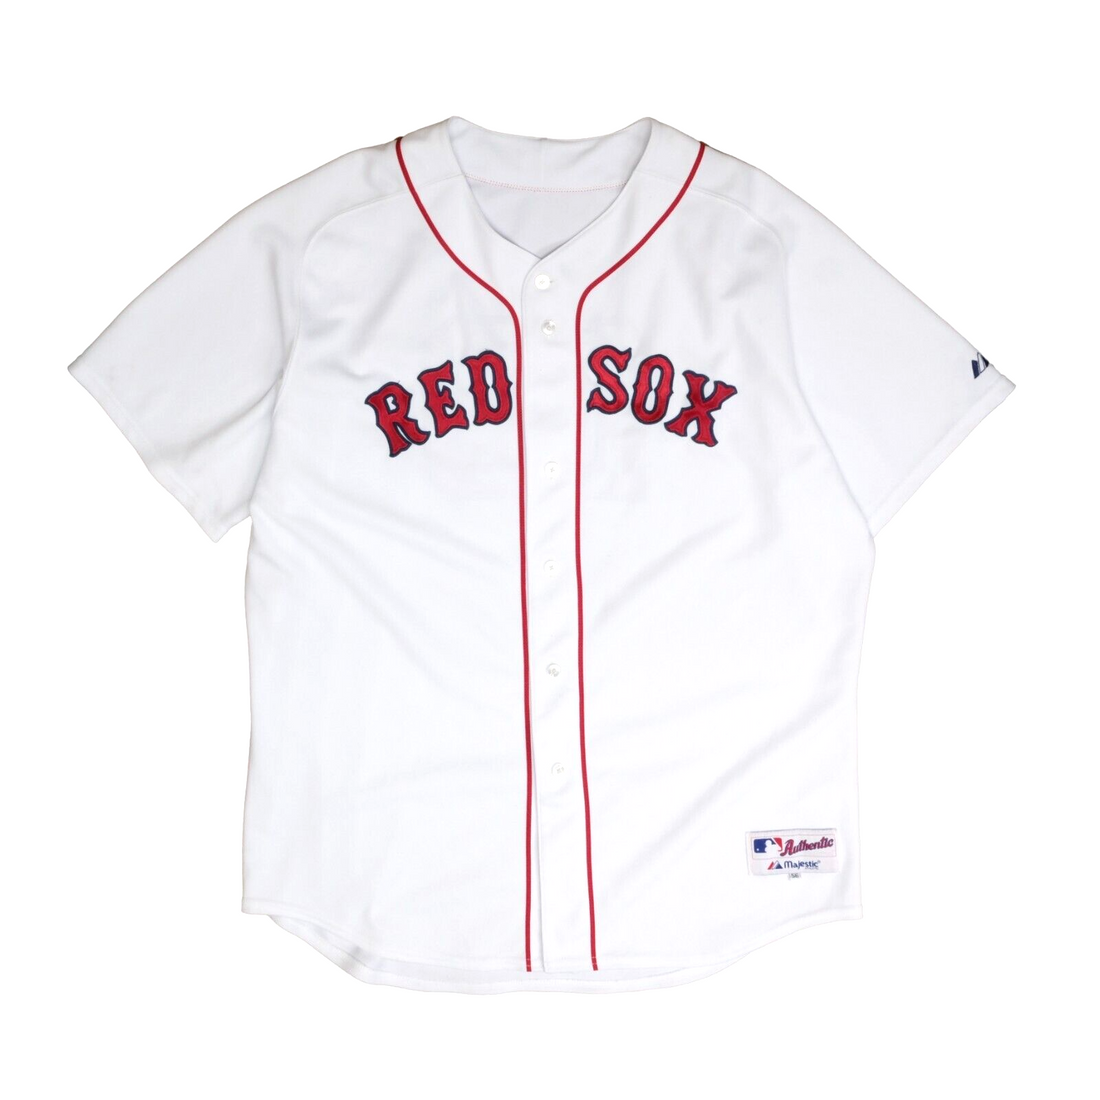 Vintage Boston Red Sox Daisuke Matsuzaka Authentic Majestic Jersey Size 56 MLB